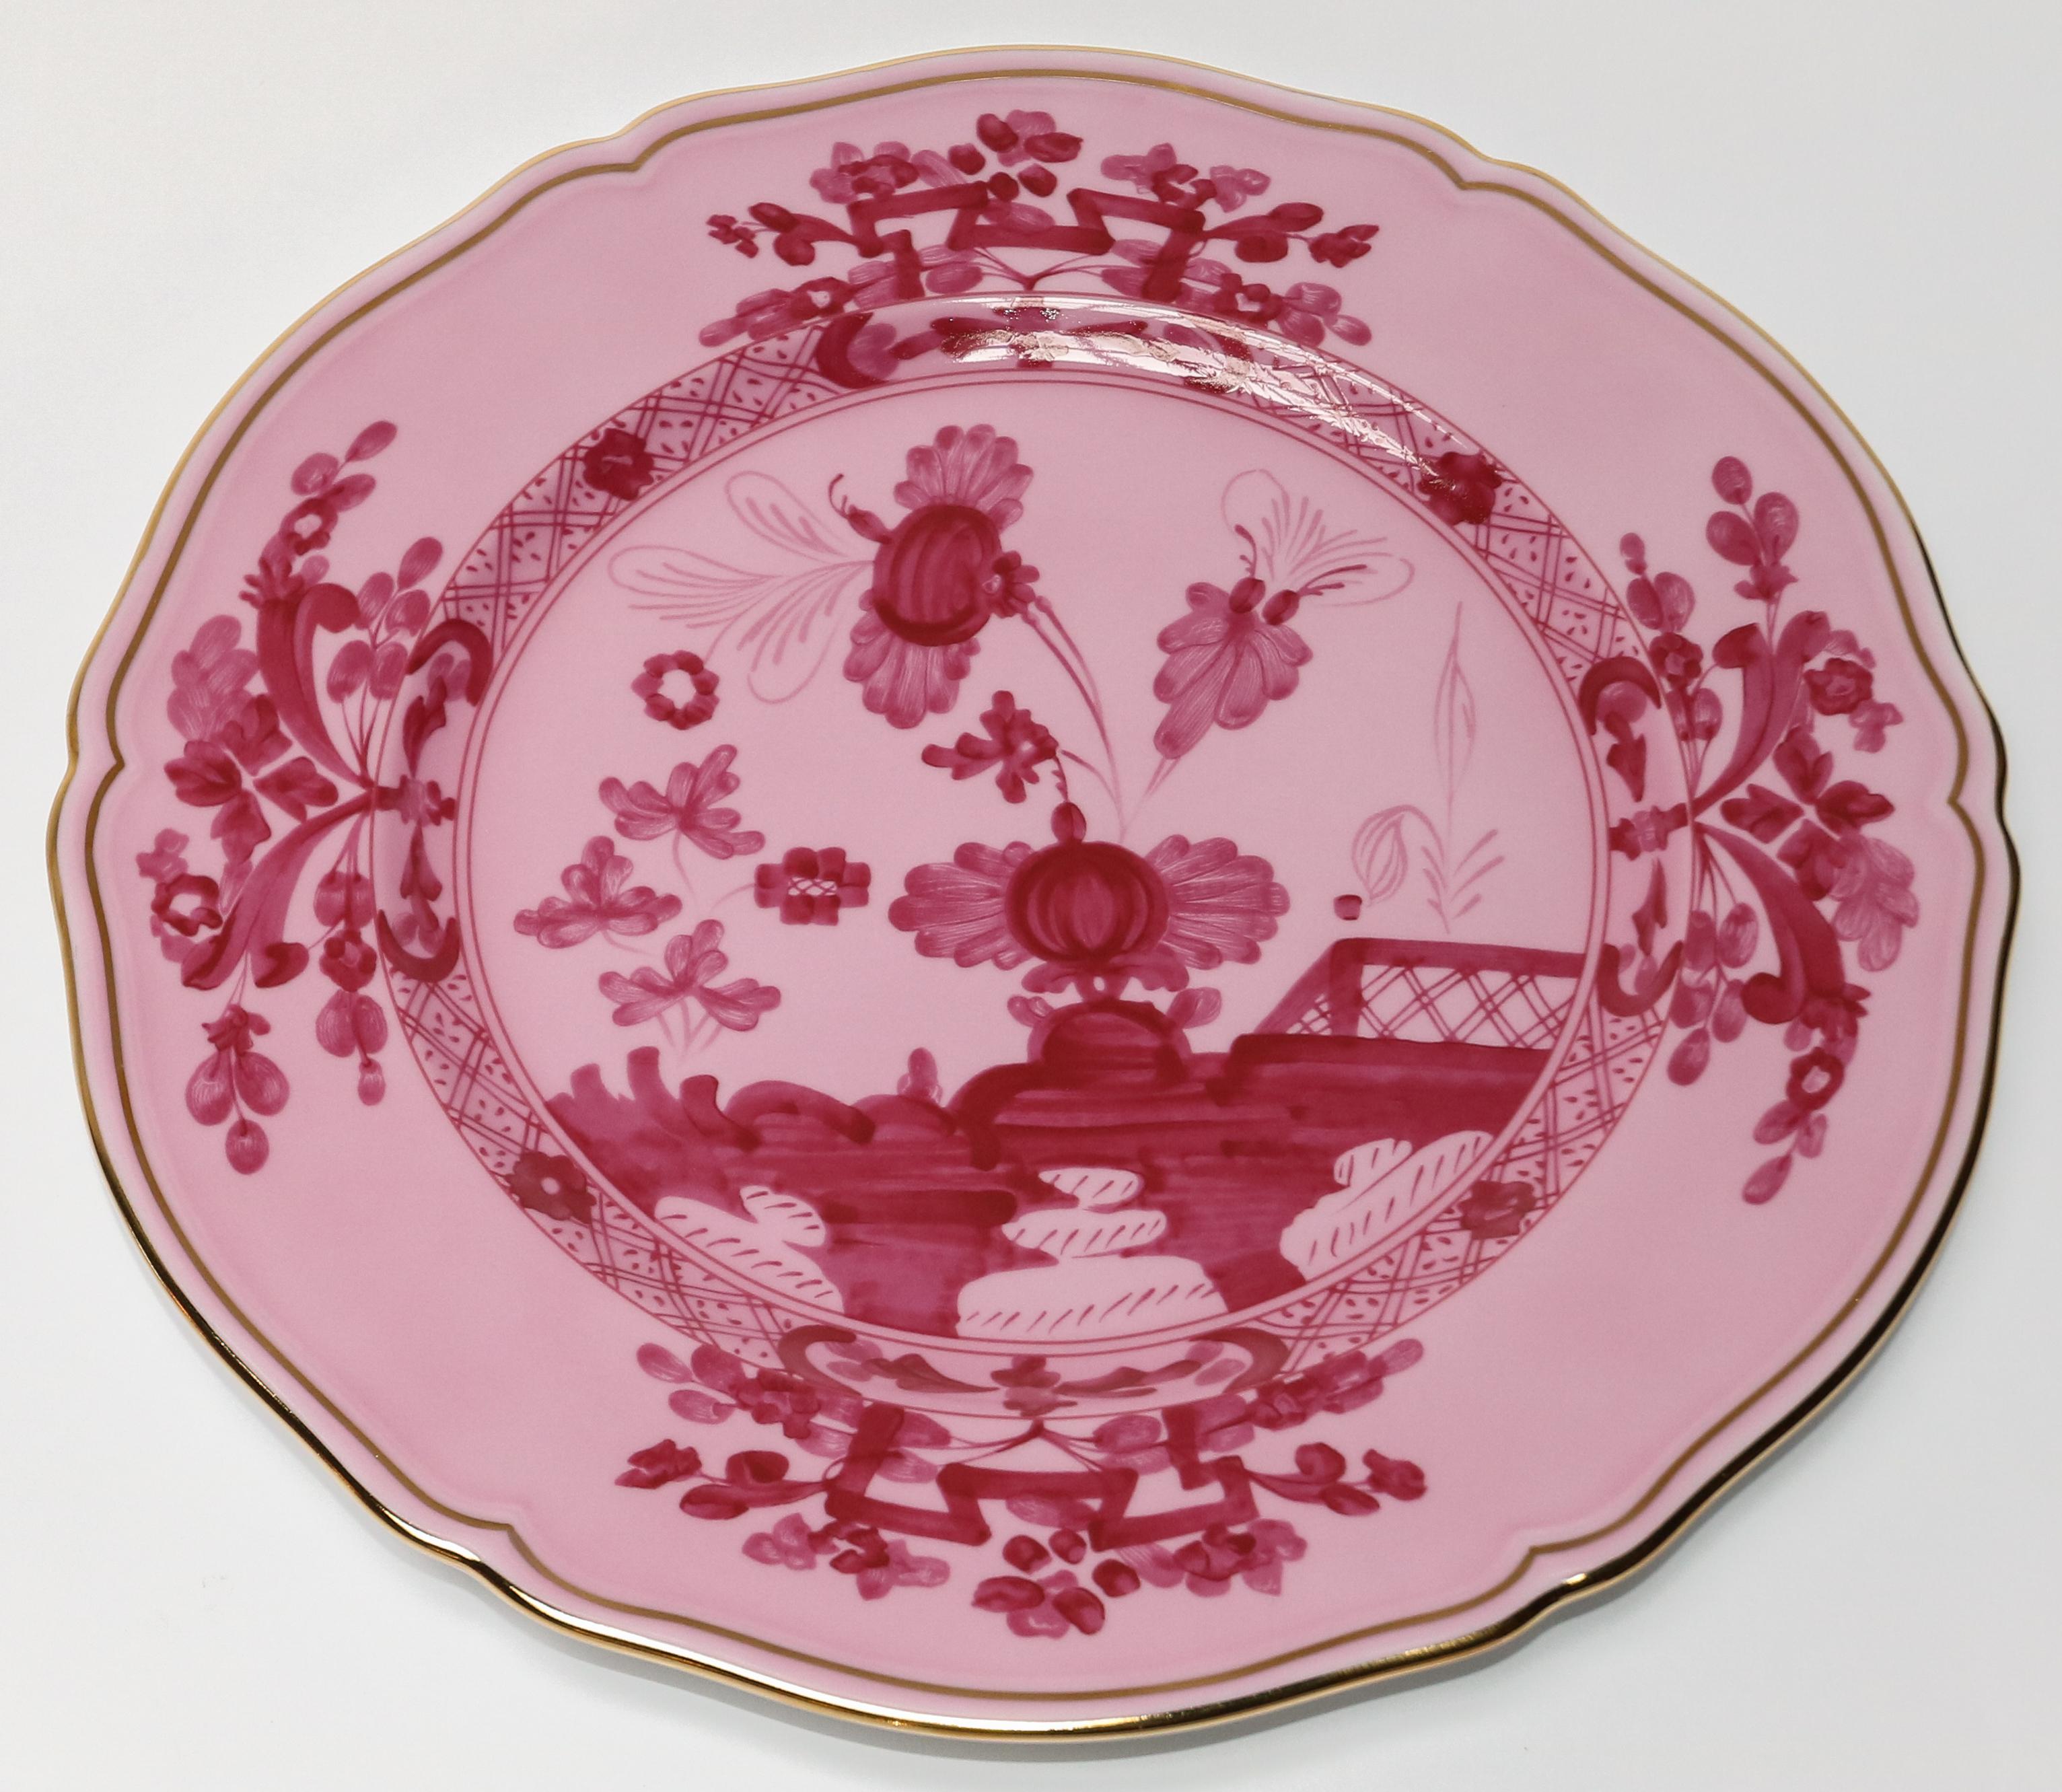 Richard Ginori Oriente Italiano porpora pink charger plate in the Antico Doccia shape 31cm in diameter.
  